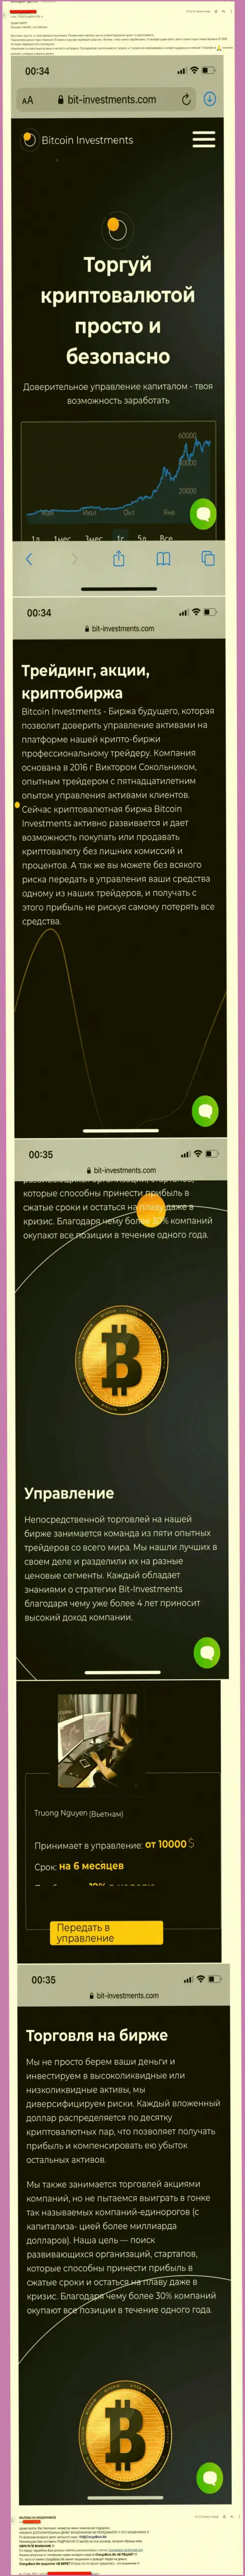 Бегите от Bitcoin Investments как можно дальше, вытягивают вложенные денежные средства !!! (отзыв)